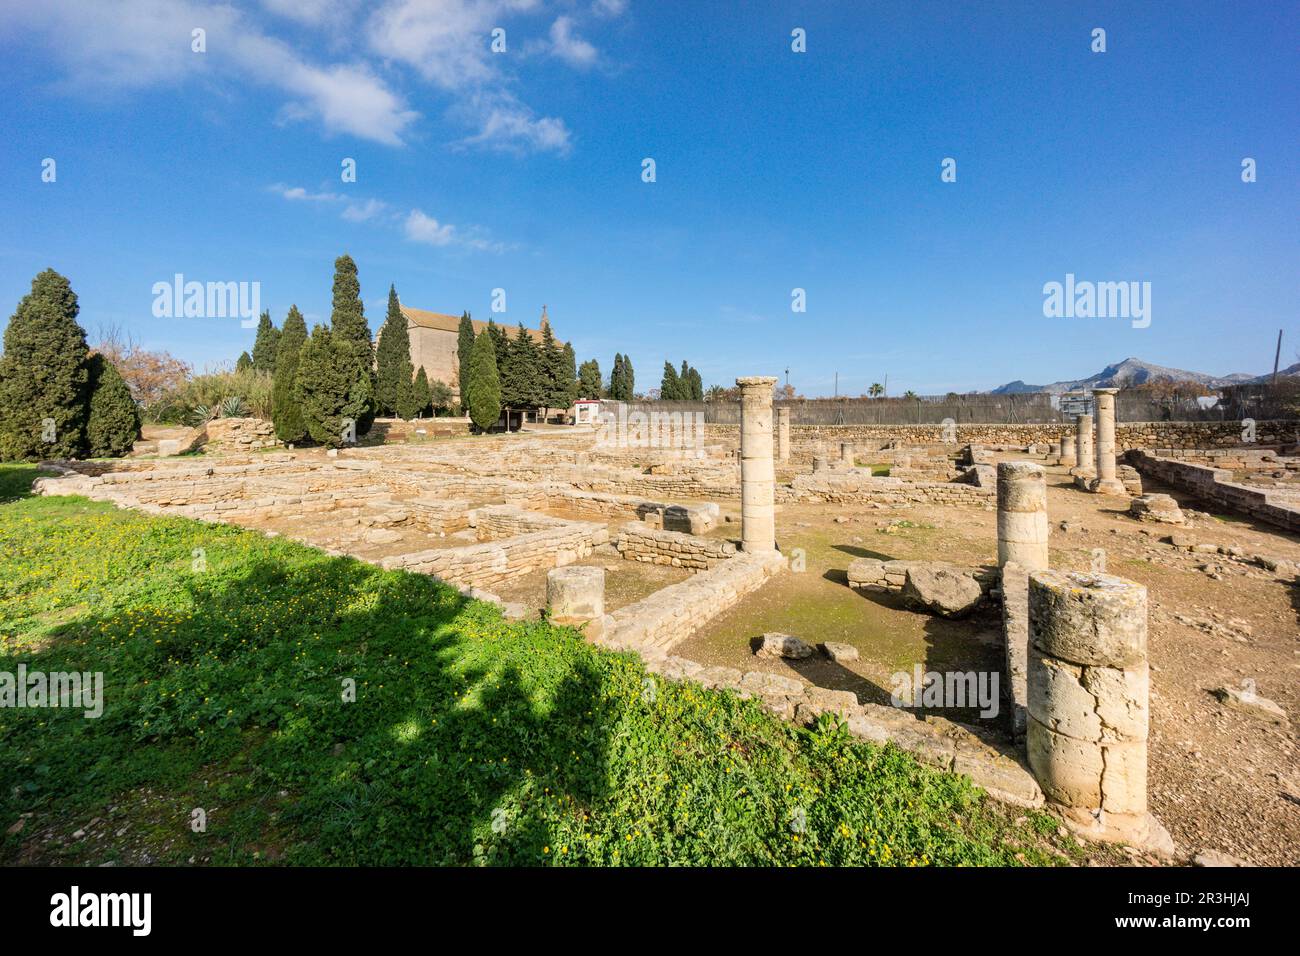 theather, römische Stadt Pollentia, republikanische Ära, 123 v. Chr., gegründet von Quintus Caecilius Metellus, Alcudia, Mallorca, Balearen, Spanien. Stockfoto